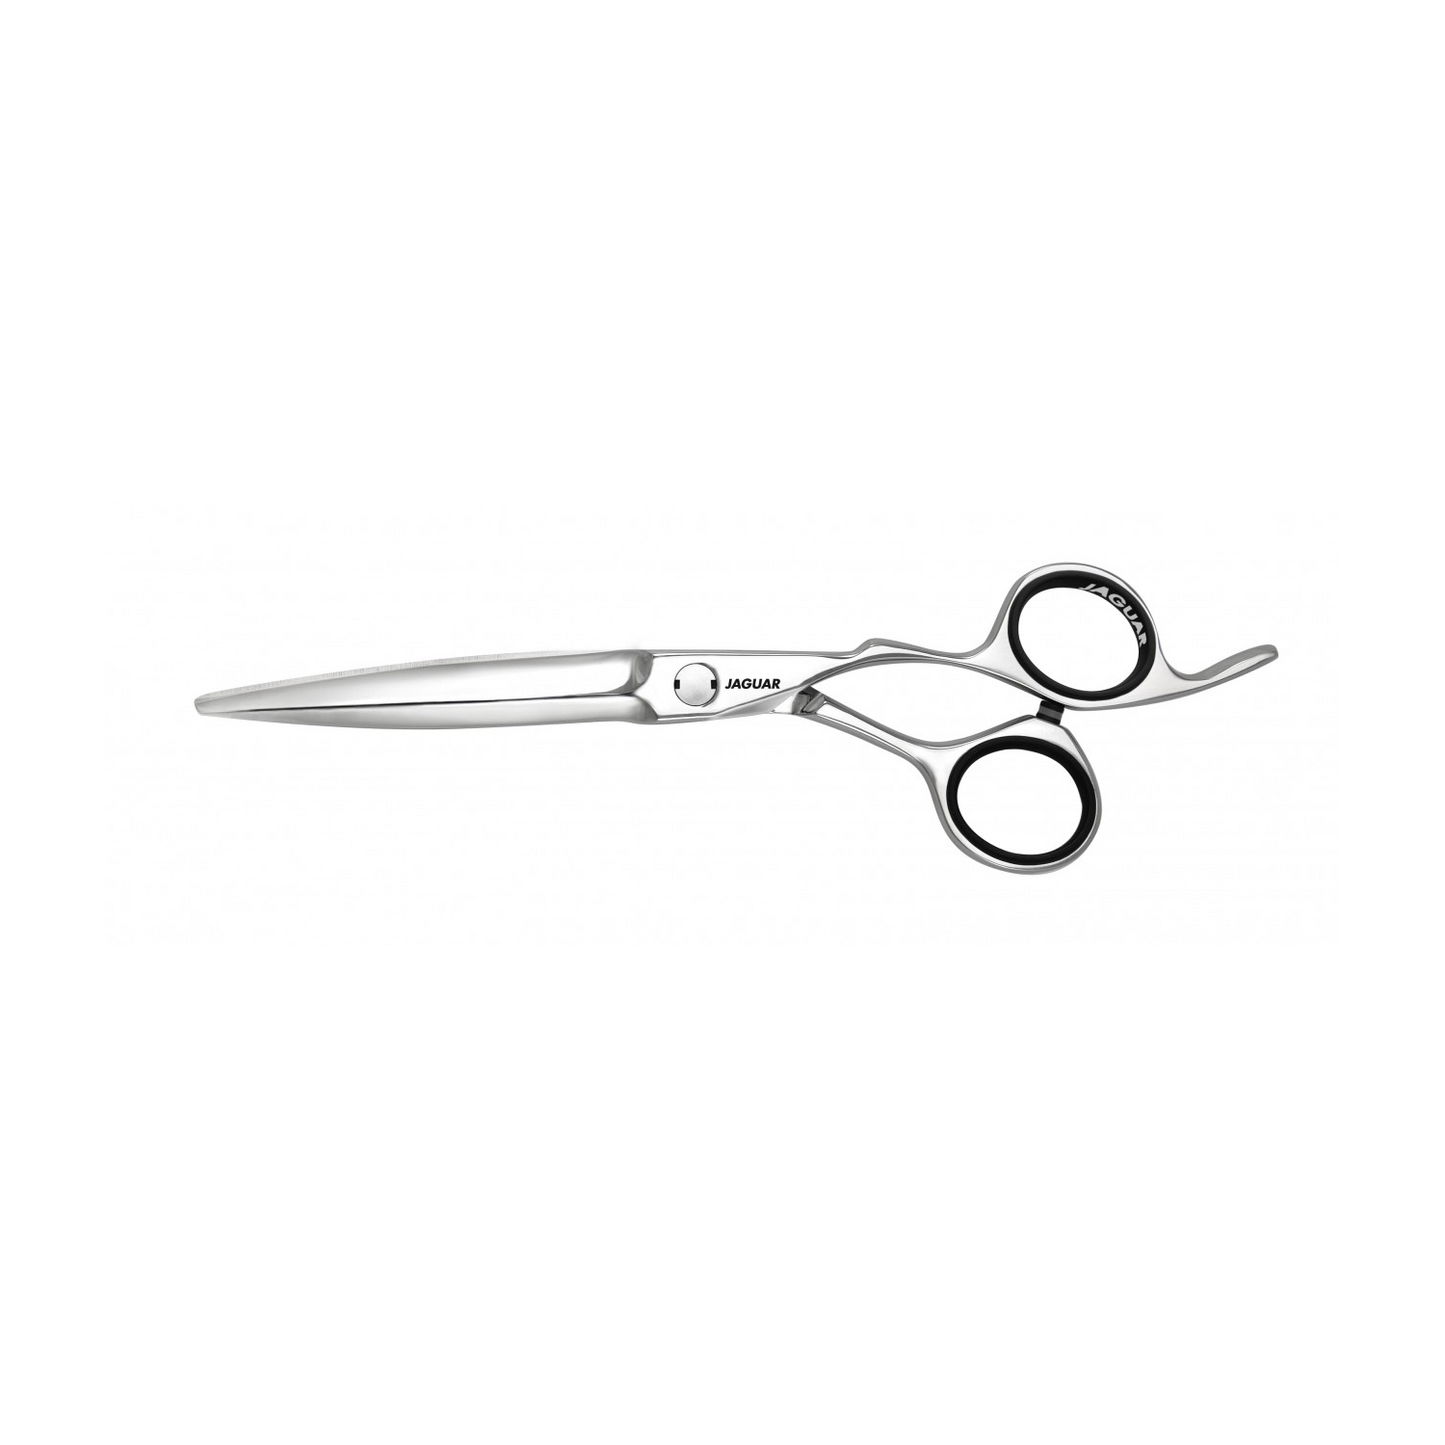 Jaguar 5.5" Heron Hairdressing Scissors (SHOP)